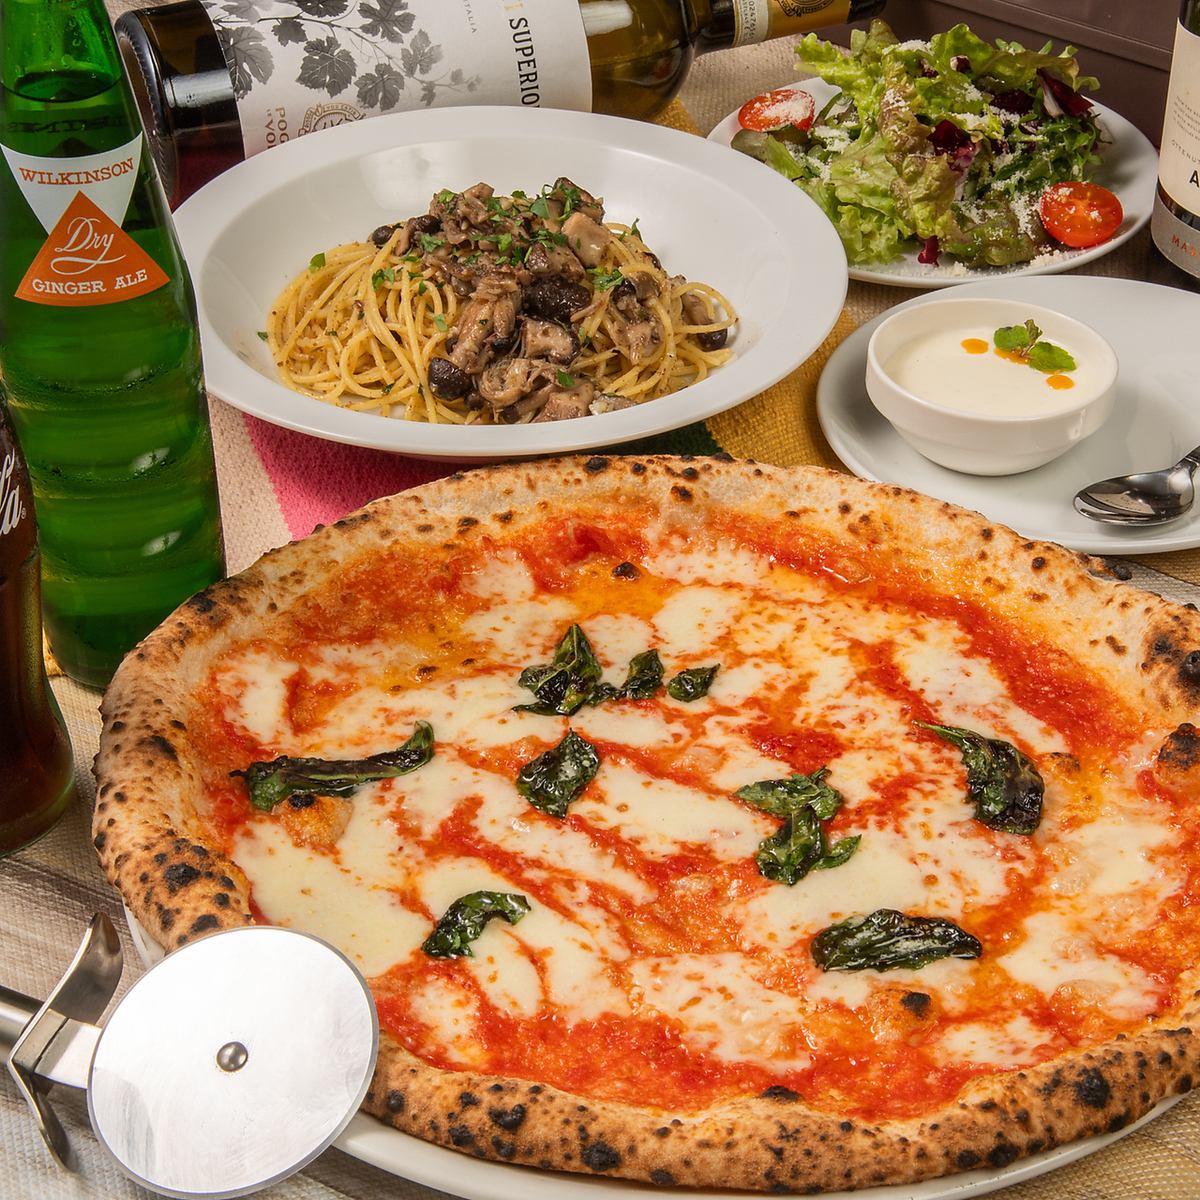 장작 가마에서 굽는 나폴리 피자 전문점.세련되고 차분한 분위기는 축하 장면에도 최적.